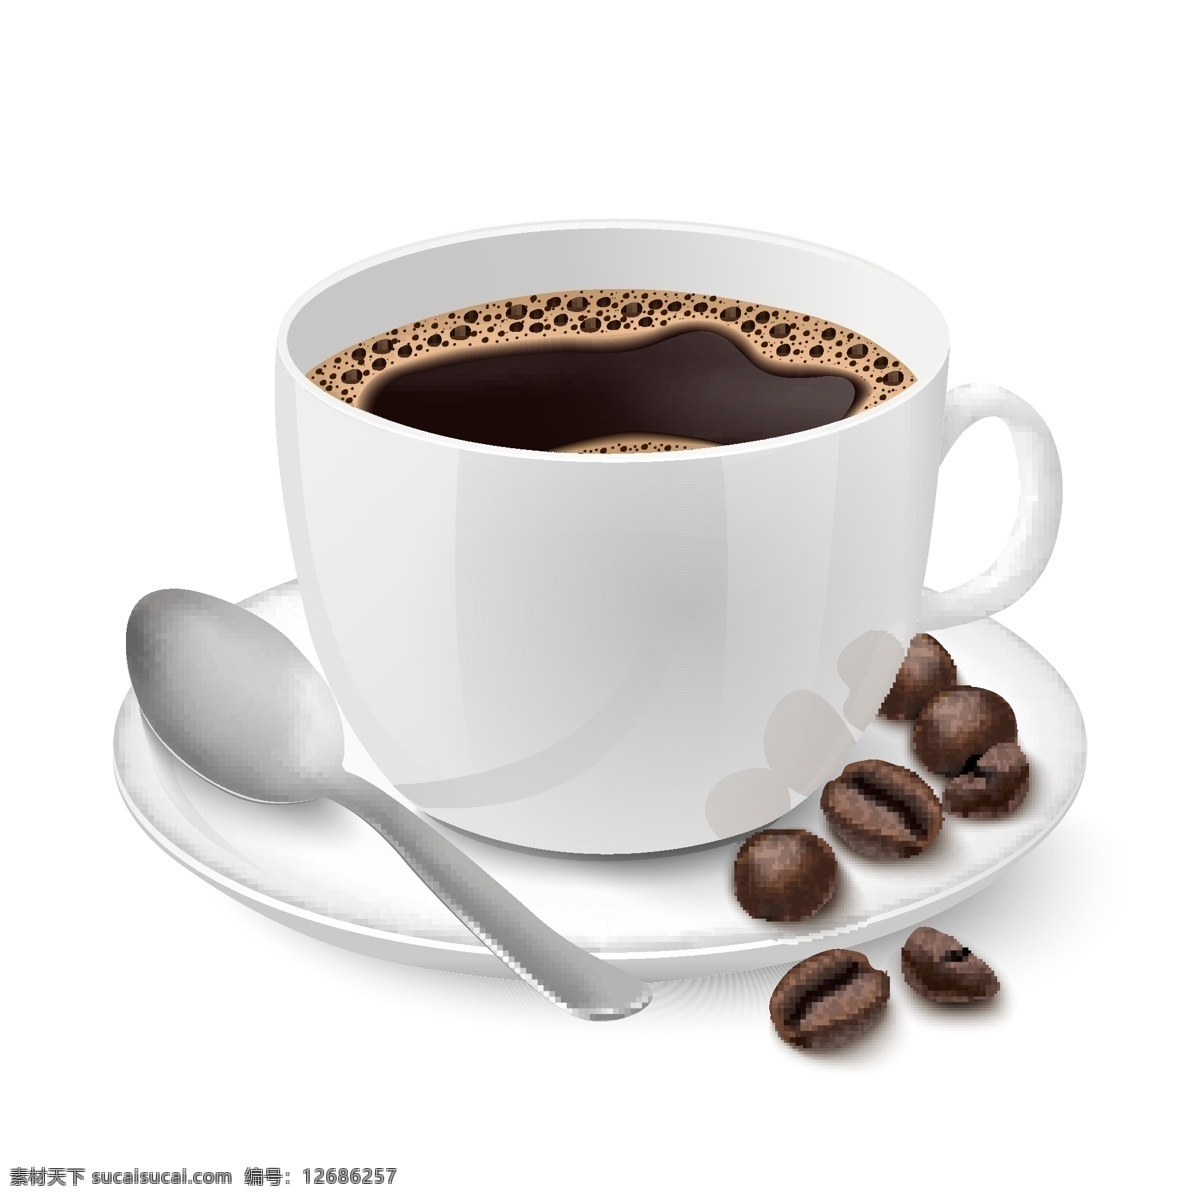 咖啡 图标 咖啡设计 咖啡图标 咖啡标志 咖啡豆 咖啡店 咖啡元素 咖啡店图标 logo coffee 咖啡商标 标志 vi icon 小图标 图标设计 logo设计 标志设计 标识设计 矢量设计 餐饮美食 生活百科 矢量